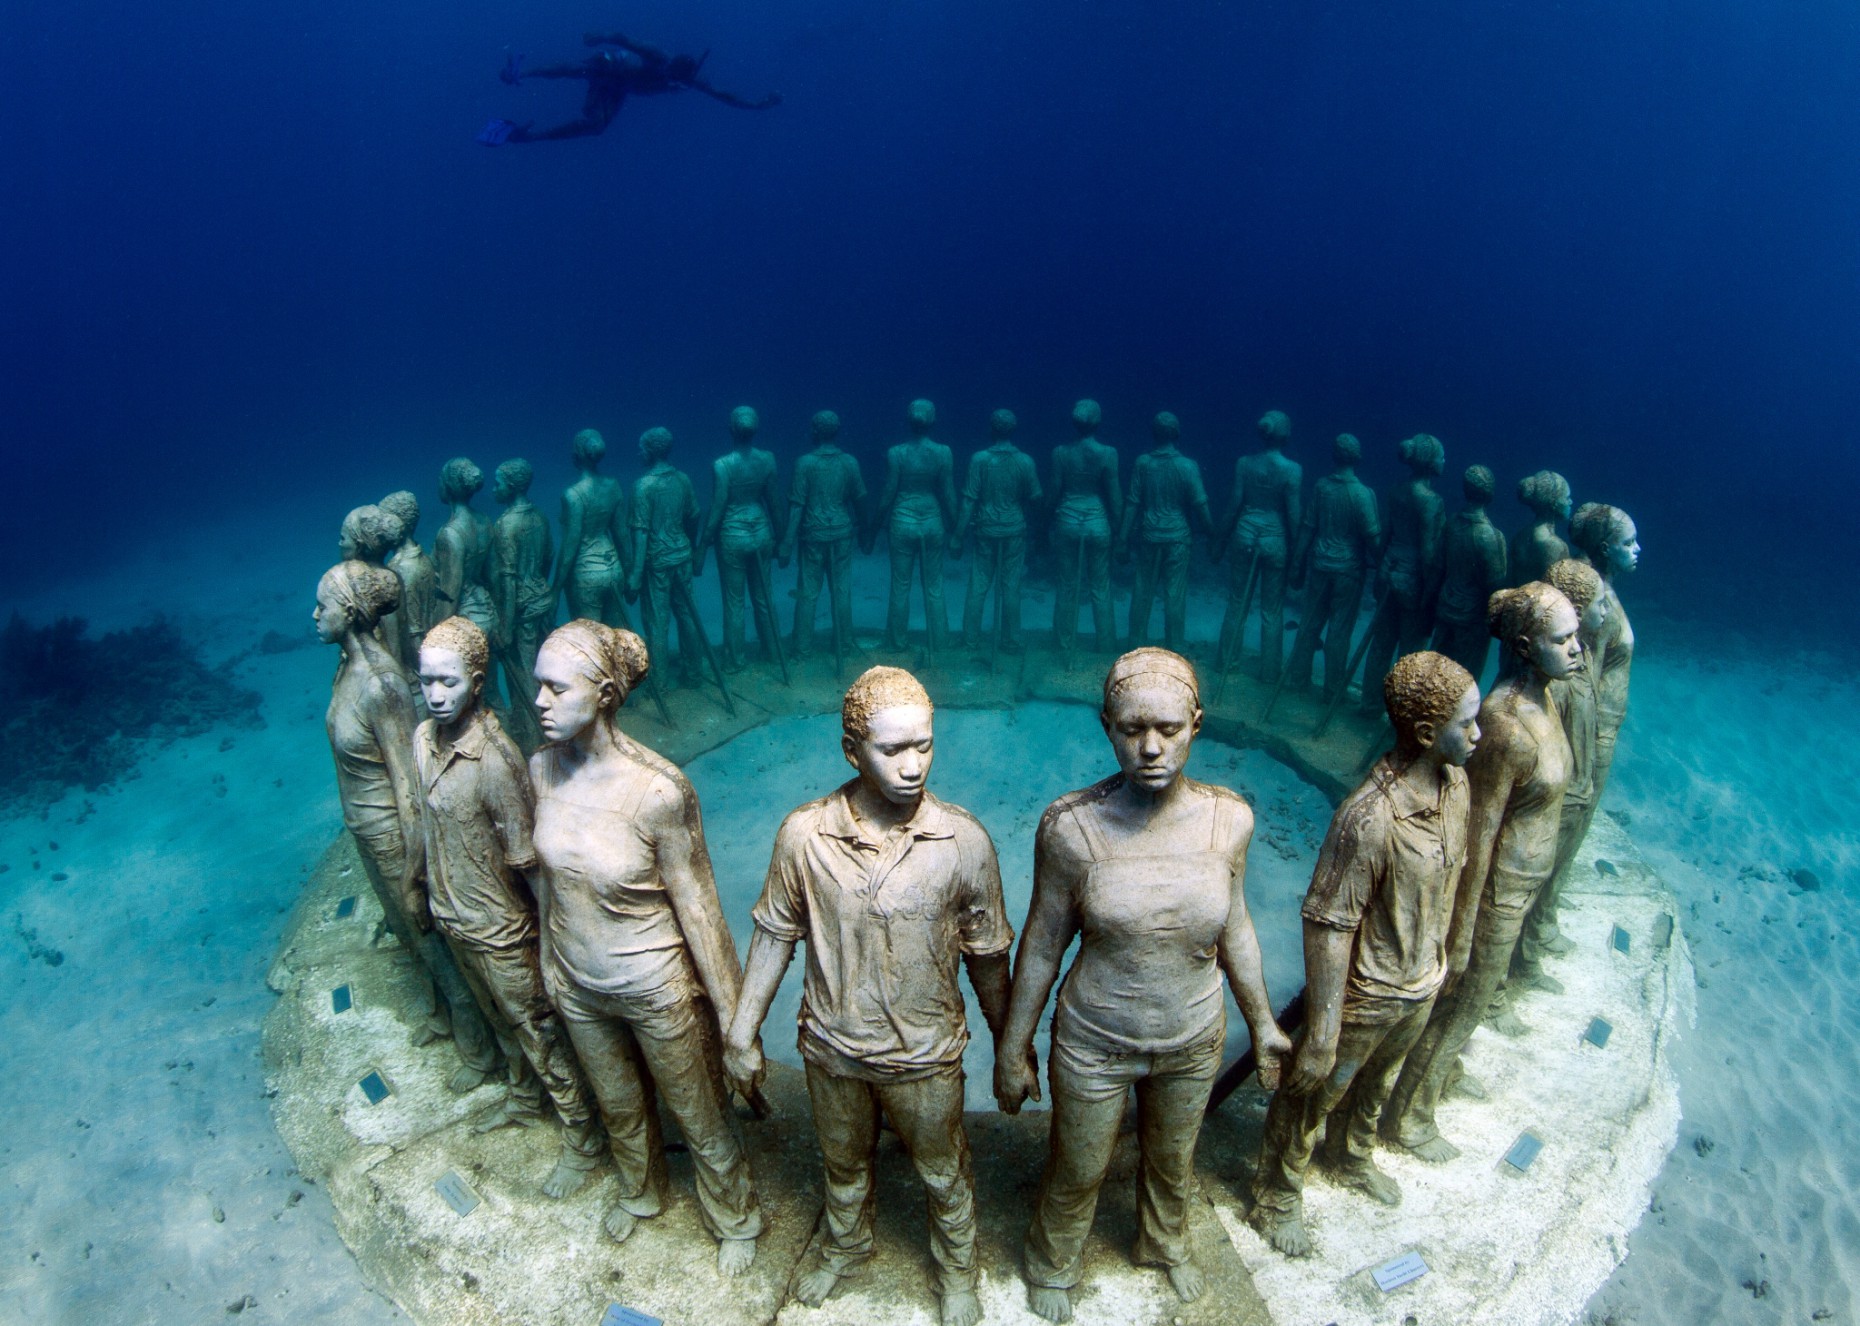 Las esculturas son del artista Jason de Caires y están sumergidas a 12 metros de profundidad